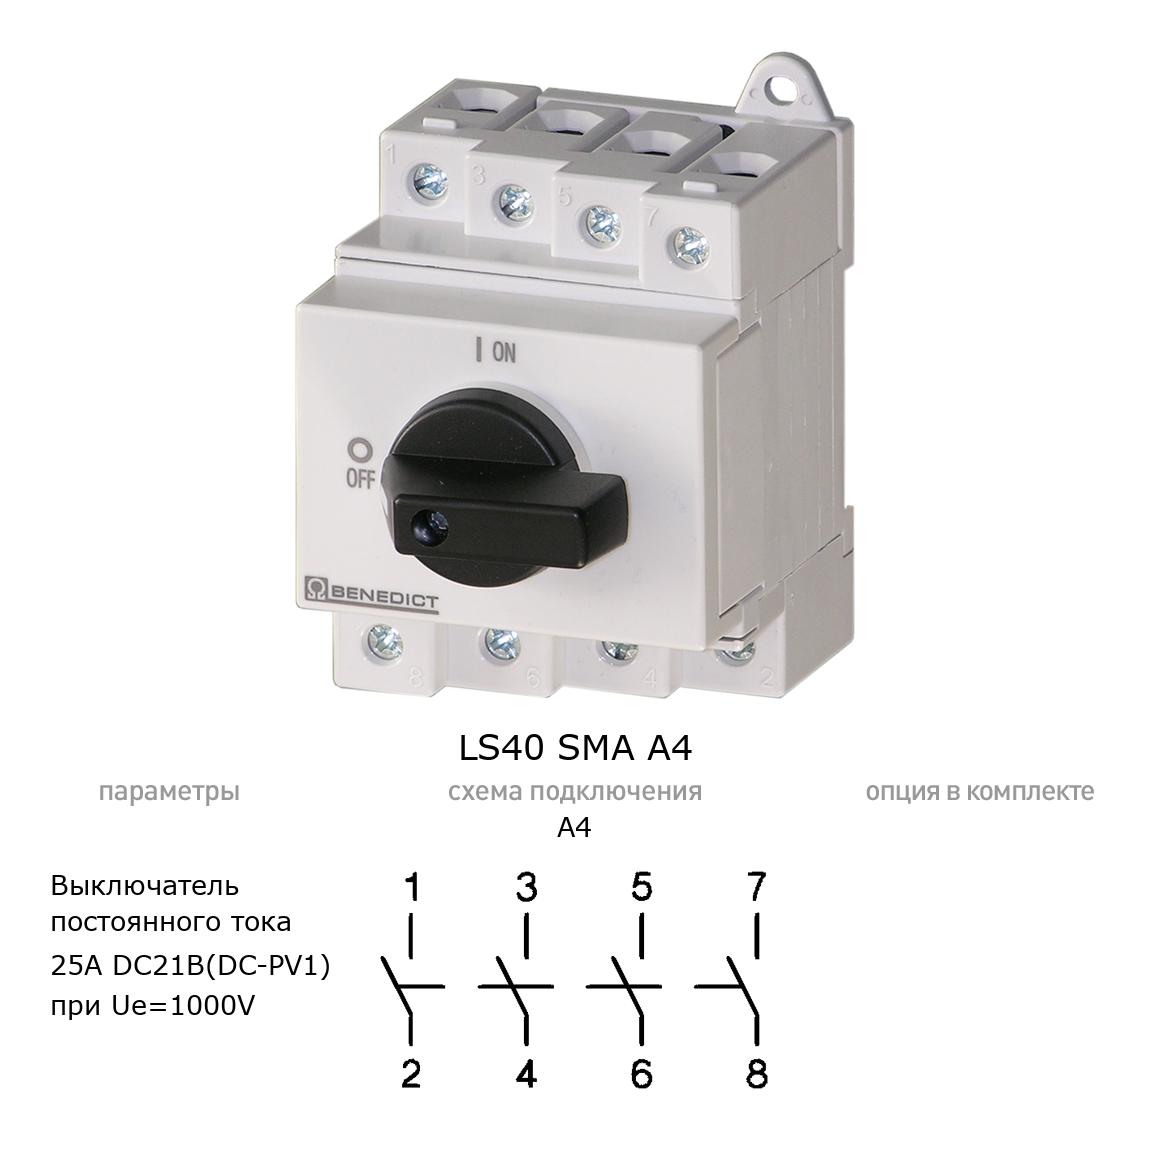 Кулачковый переключатель для постоянного тока (DC) LS40 SMA A4 BENEDICT